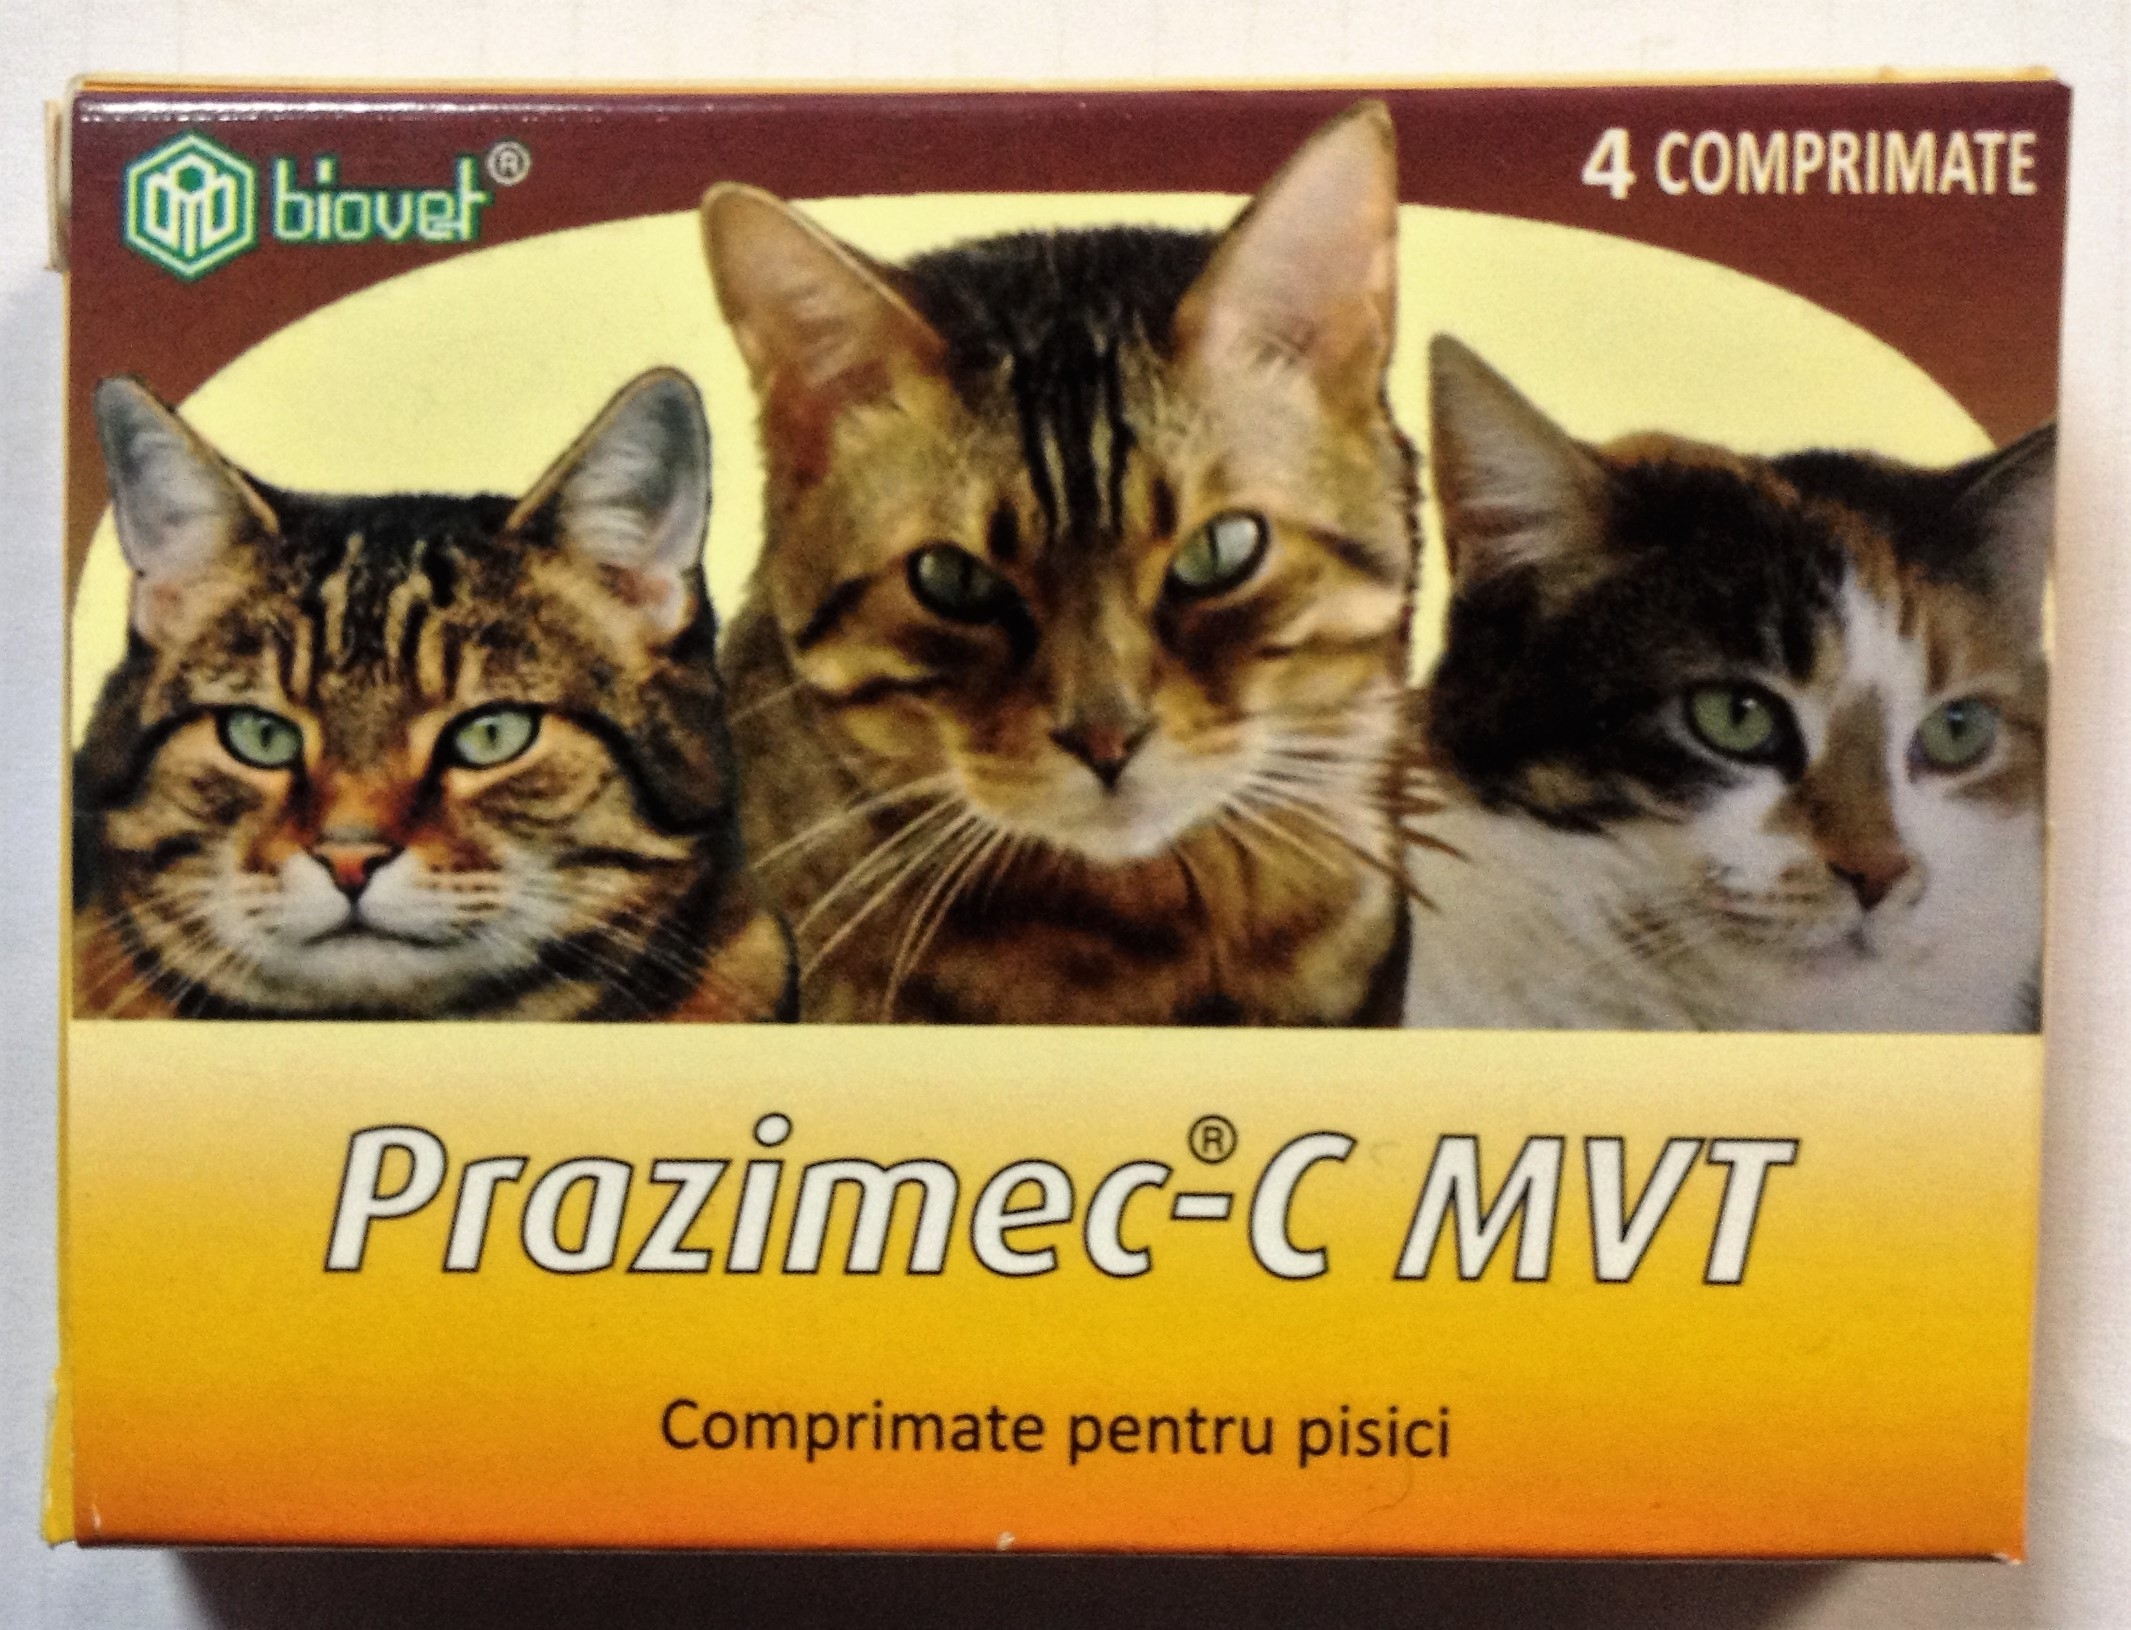 Prazimec C pisici 4 comprimate Biovet imagine 2022